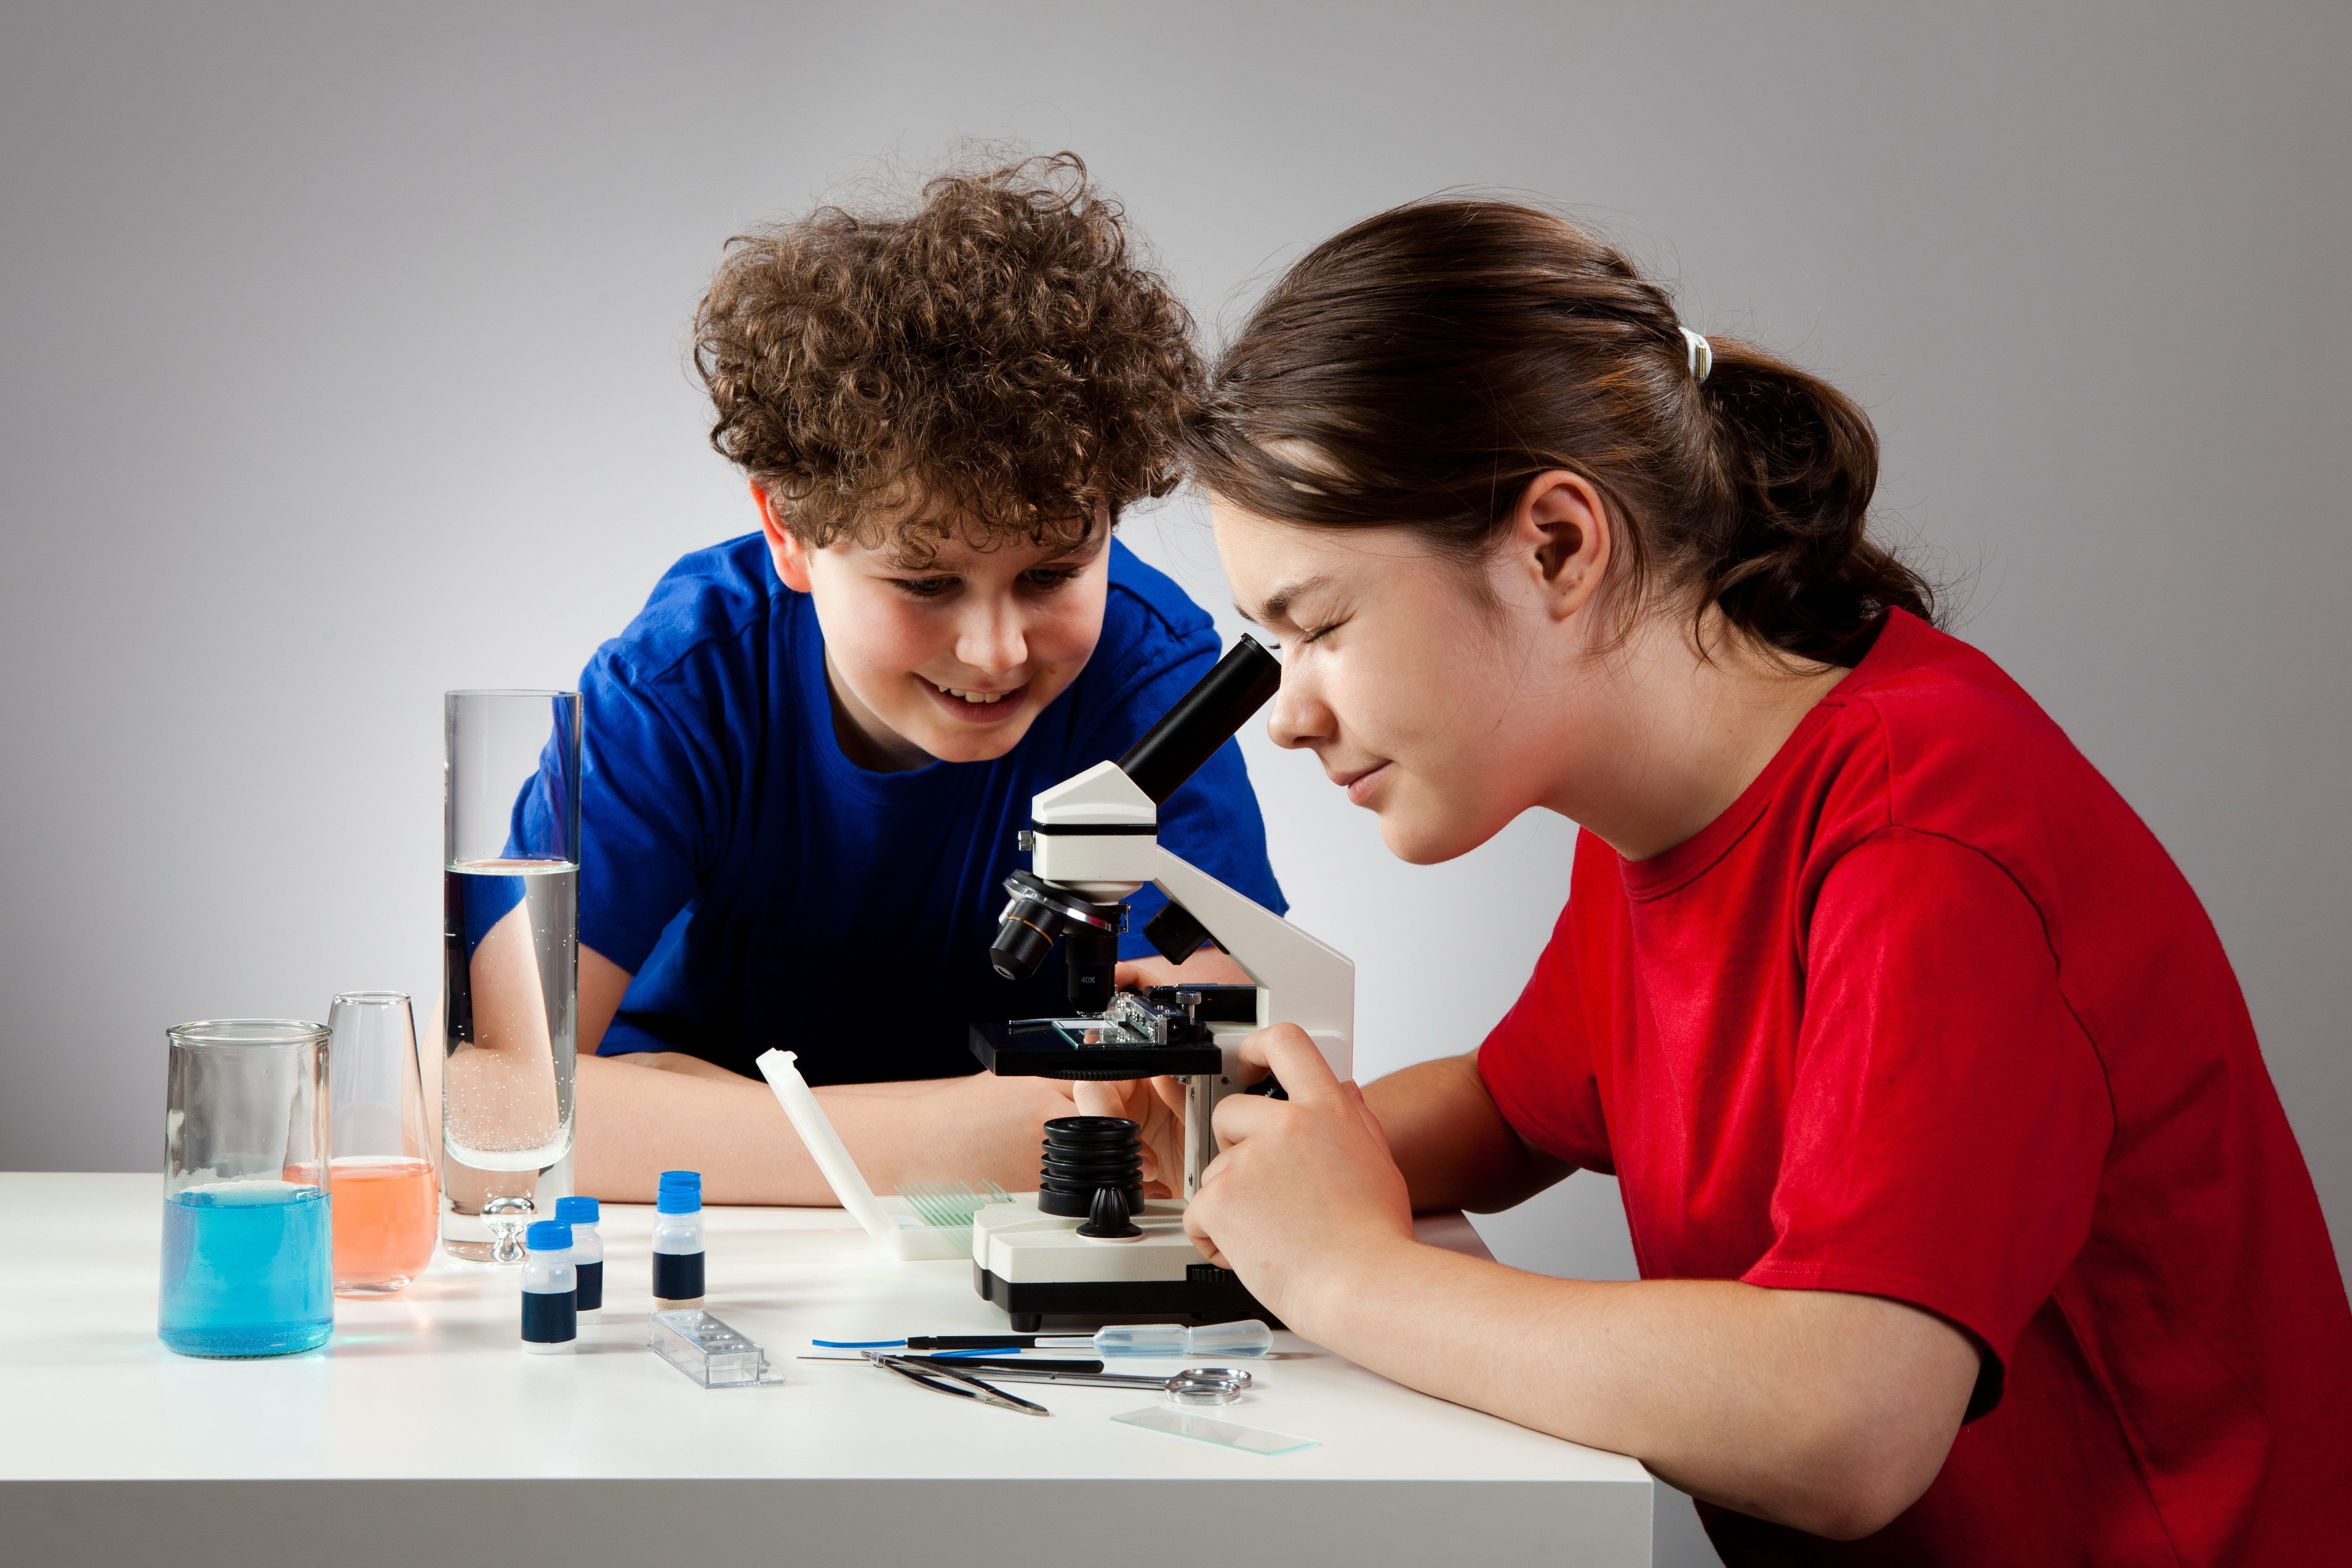 המיקרוסקופים הטובים ביותר עבור תלמידי בית ספר וסטודנטים בשנת 2020